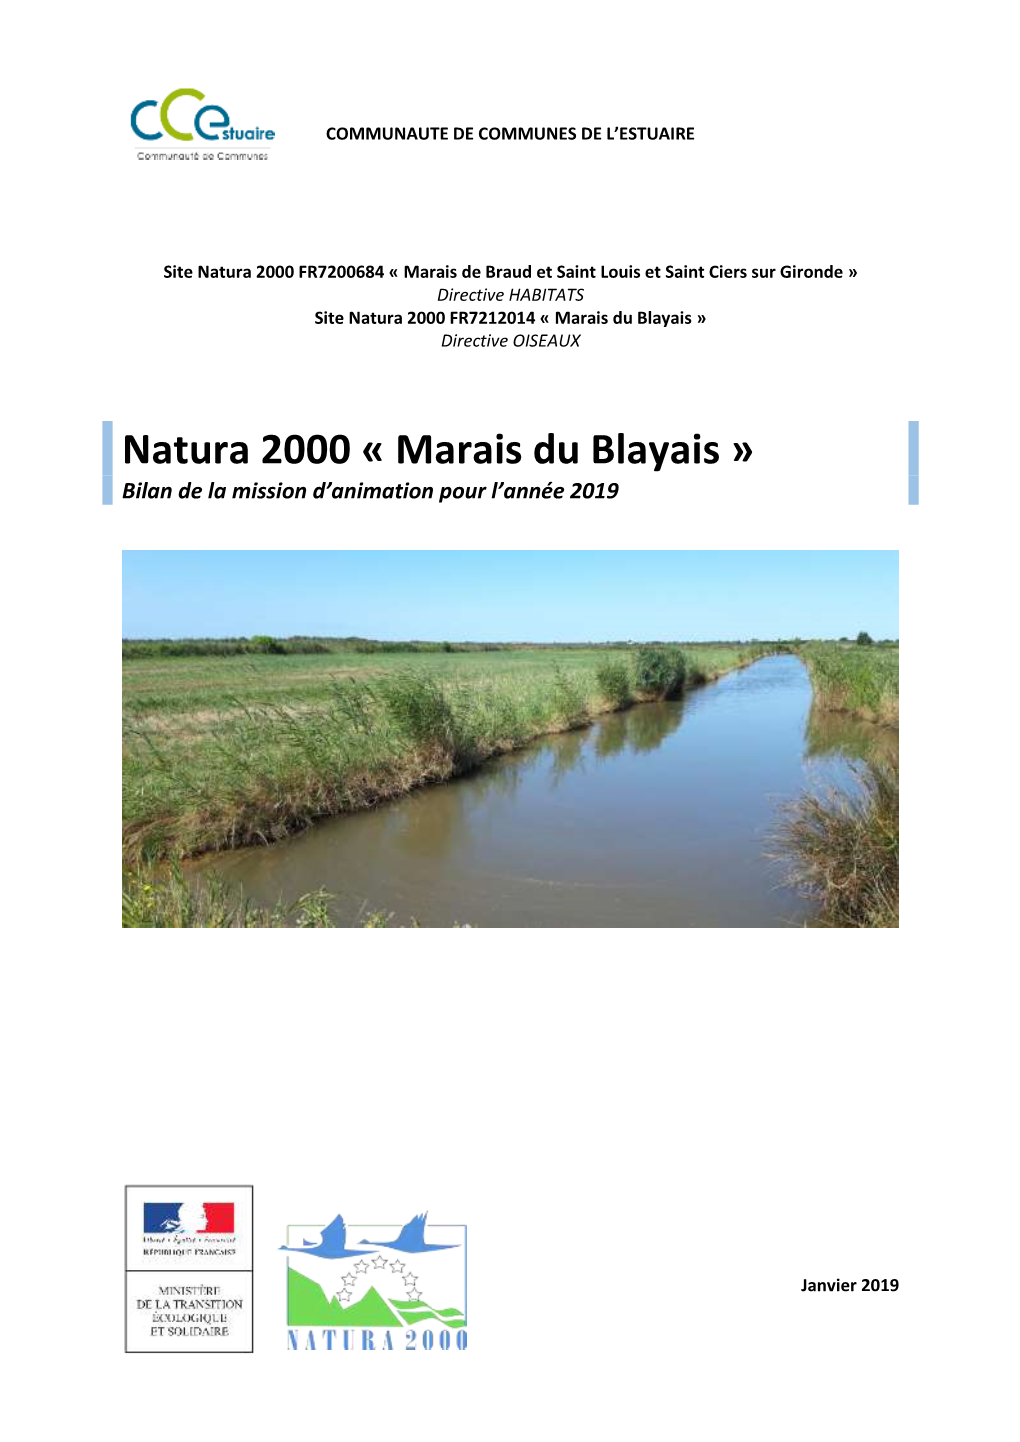 Natura 2000 « Marais Du Blayais » Bilan De La Mission D’Animation Pour L’Année 2019